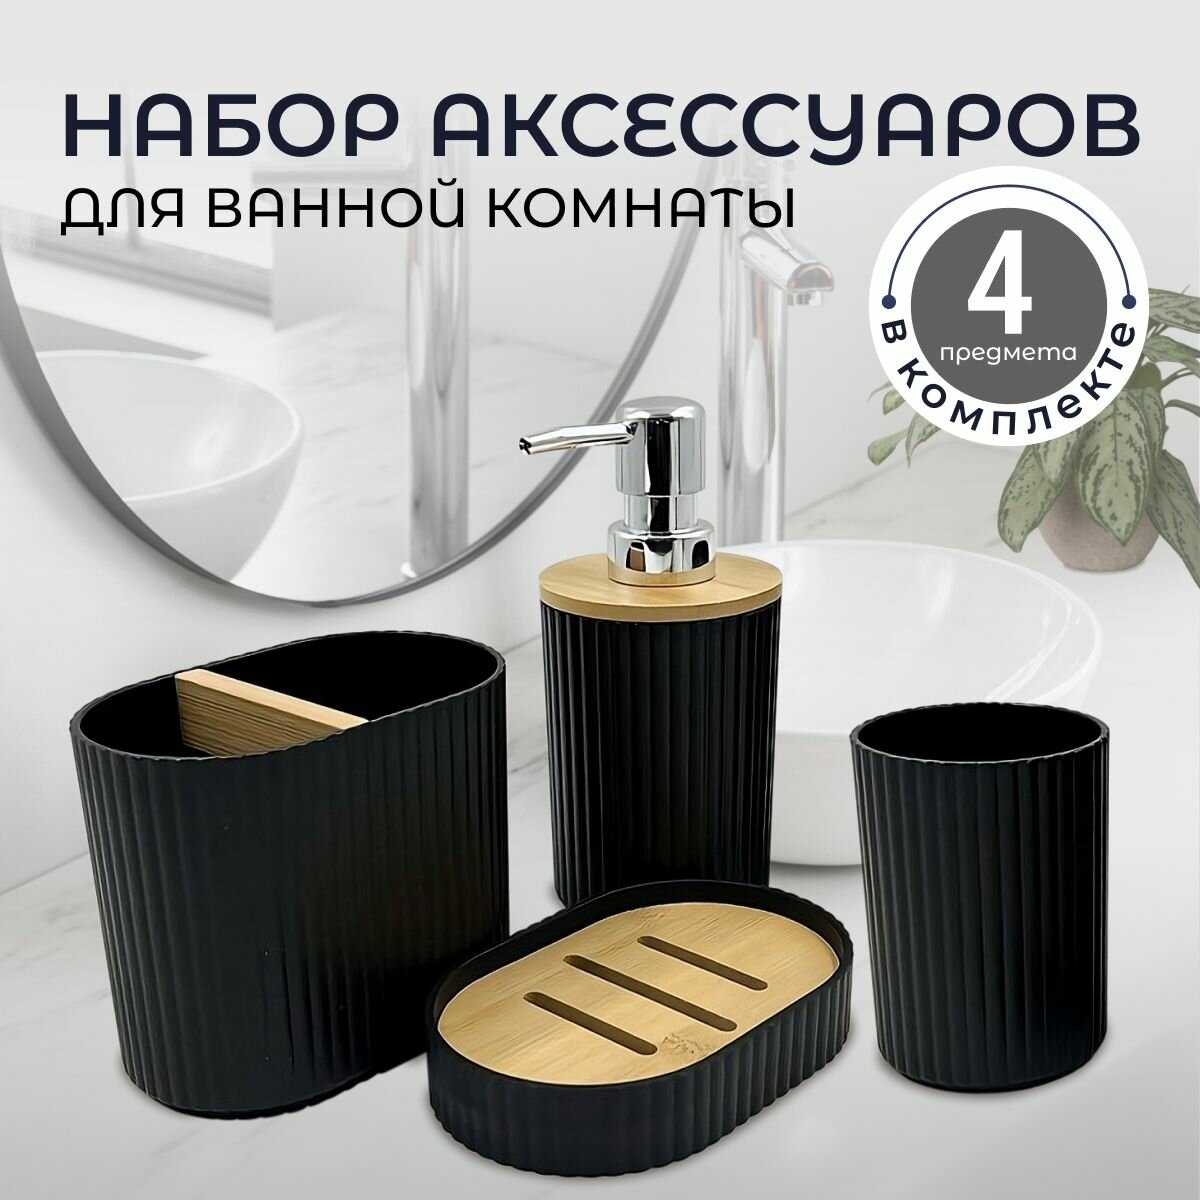 Набор аксессуаров для ванной комнаты: диспенсер для мыла, стакан для зубных щеток, стакан, мыльница; черный